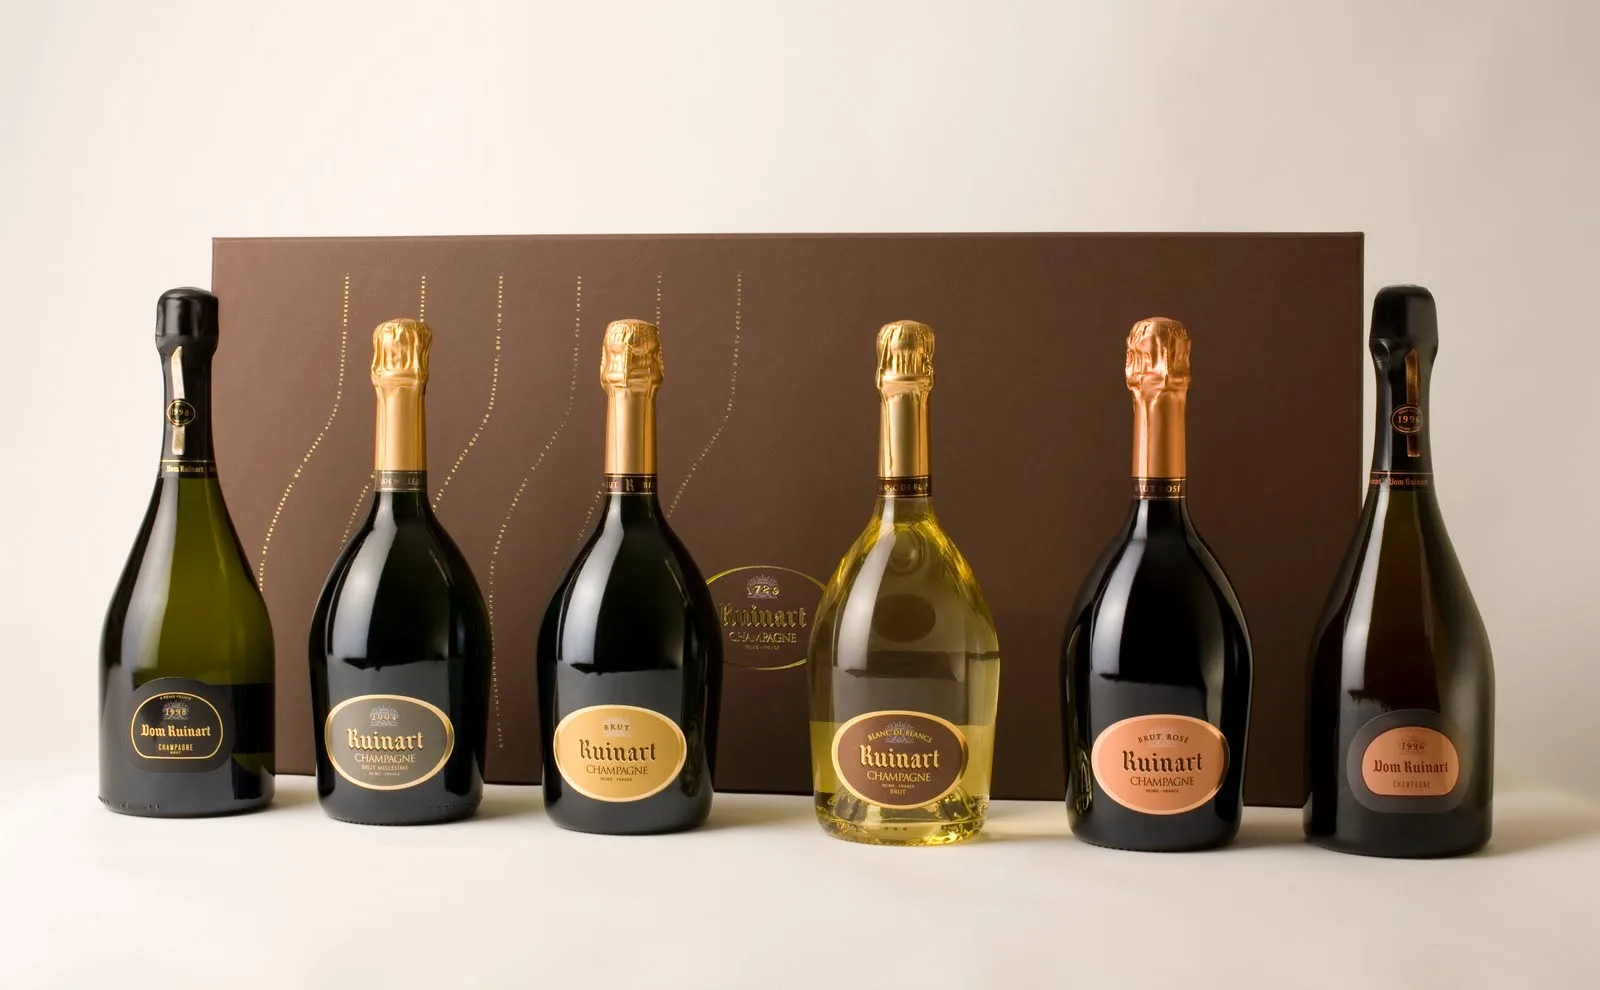 Ruinart Champagner - Preis der unterschiedlichen Cuvées